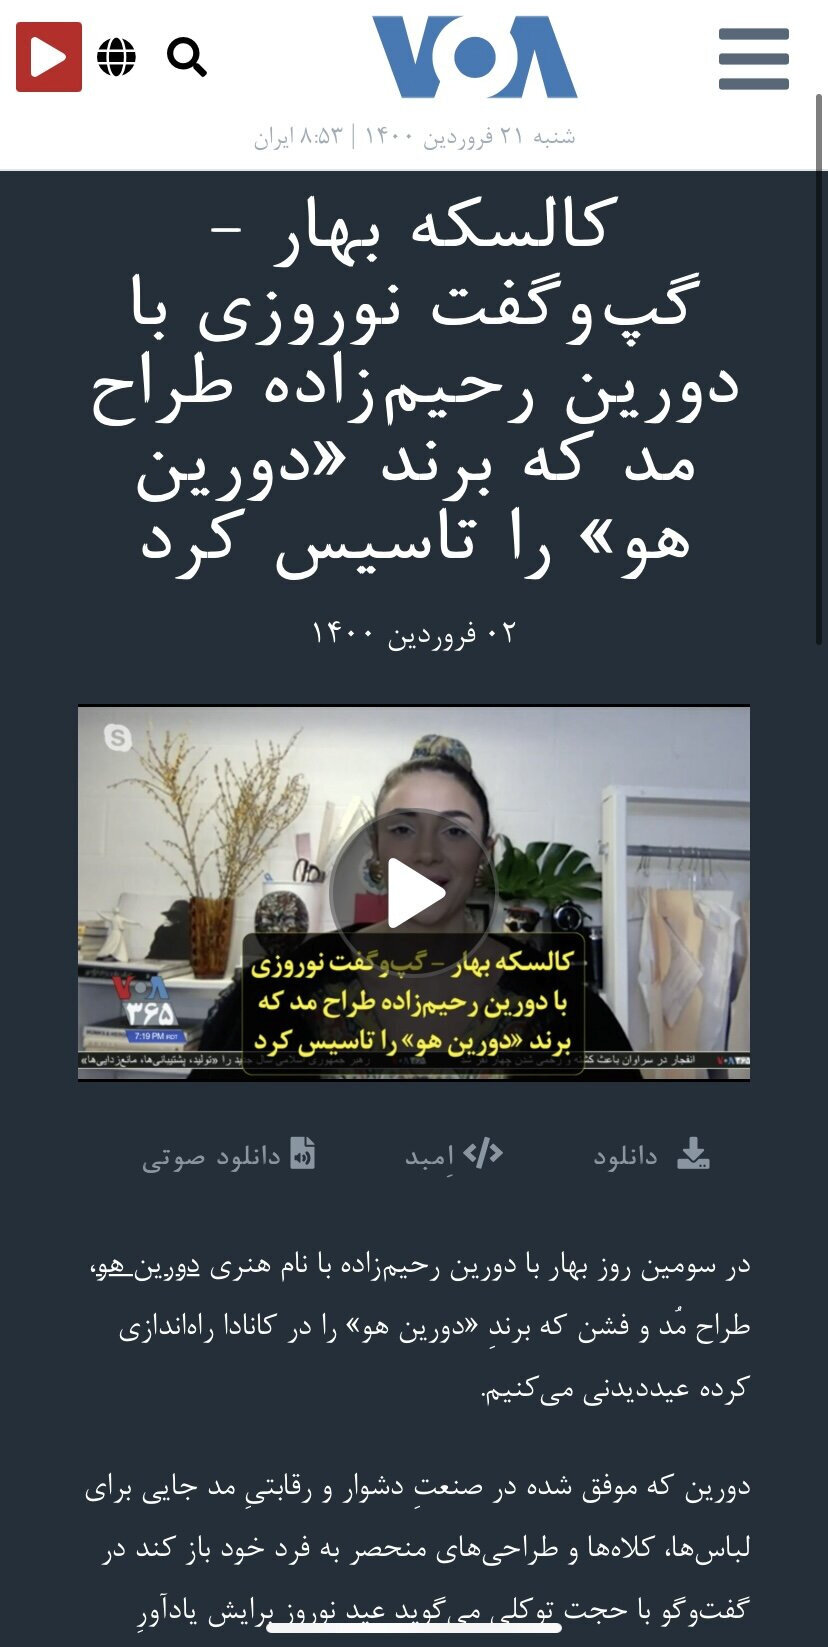 VOA Farsi March 2021